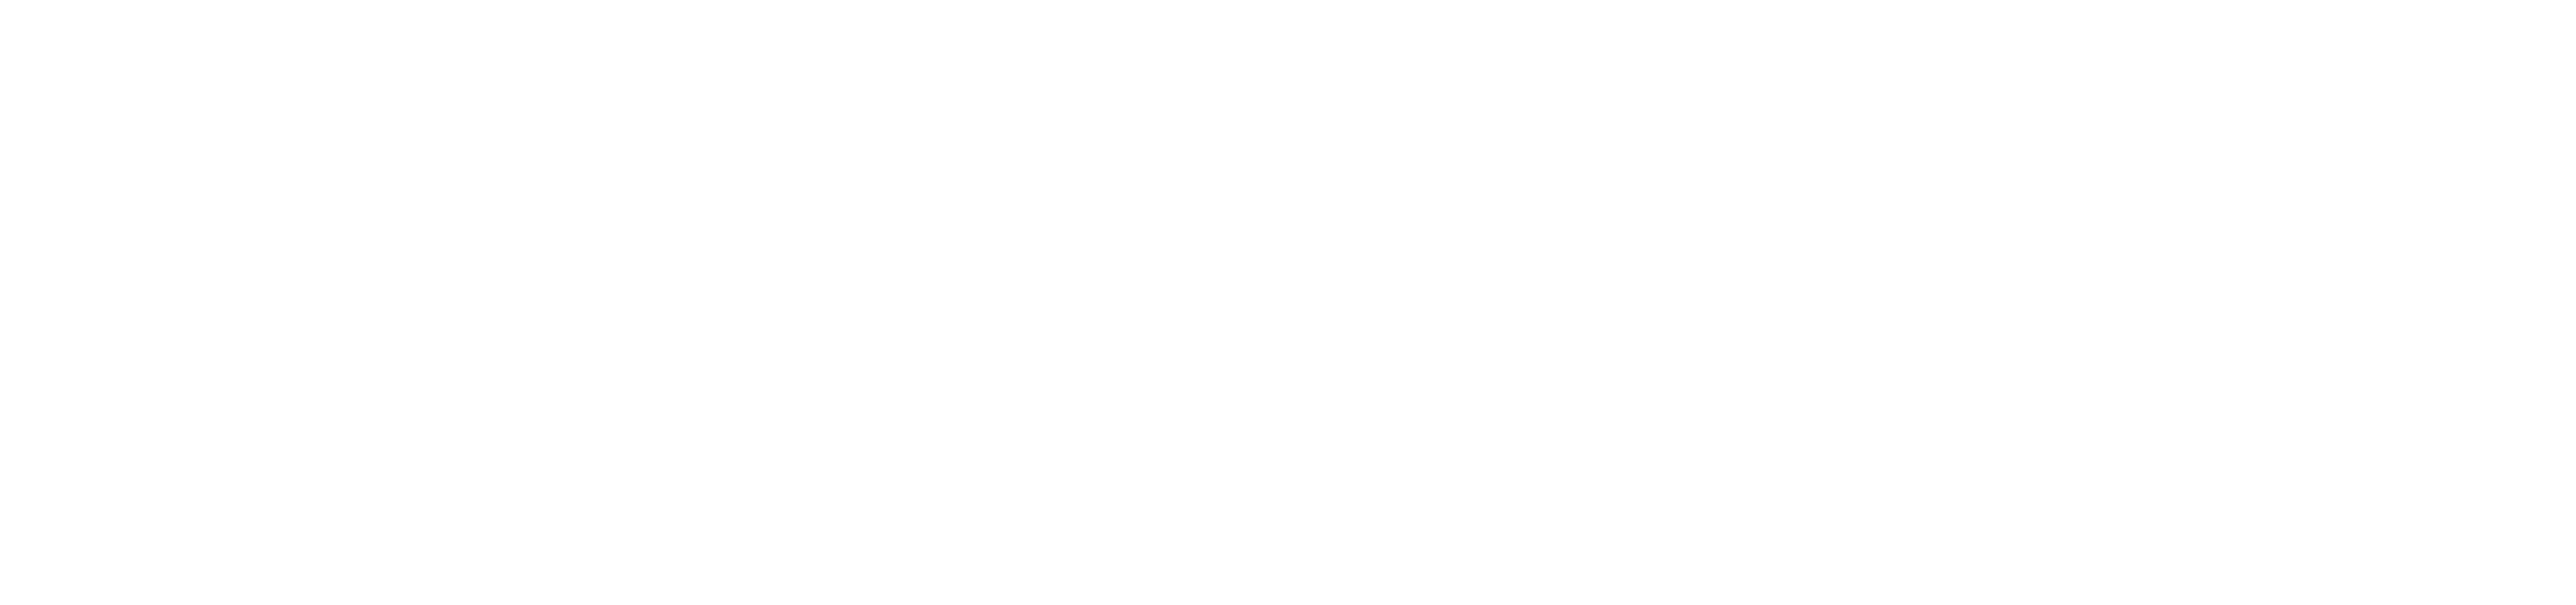 BABYBOO Fashion logo